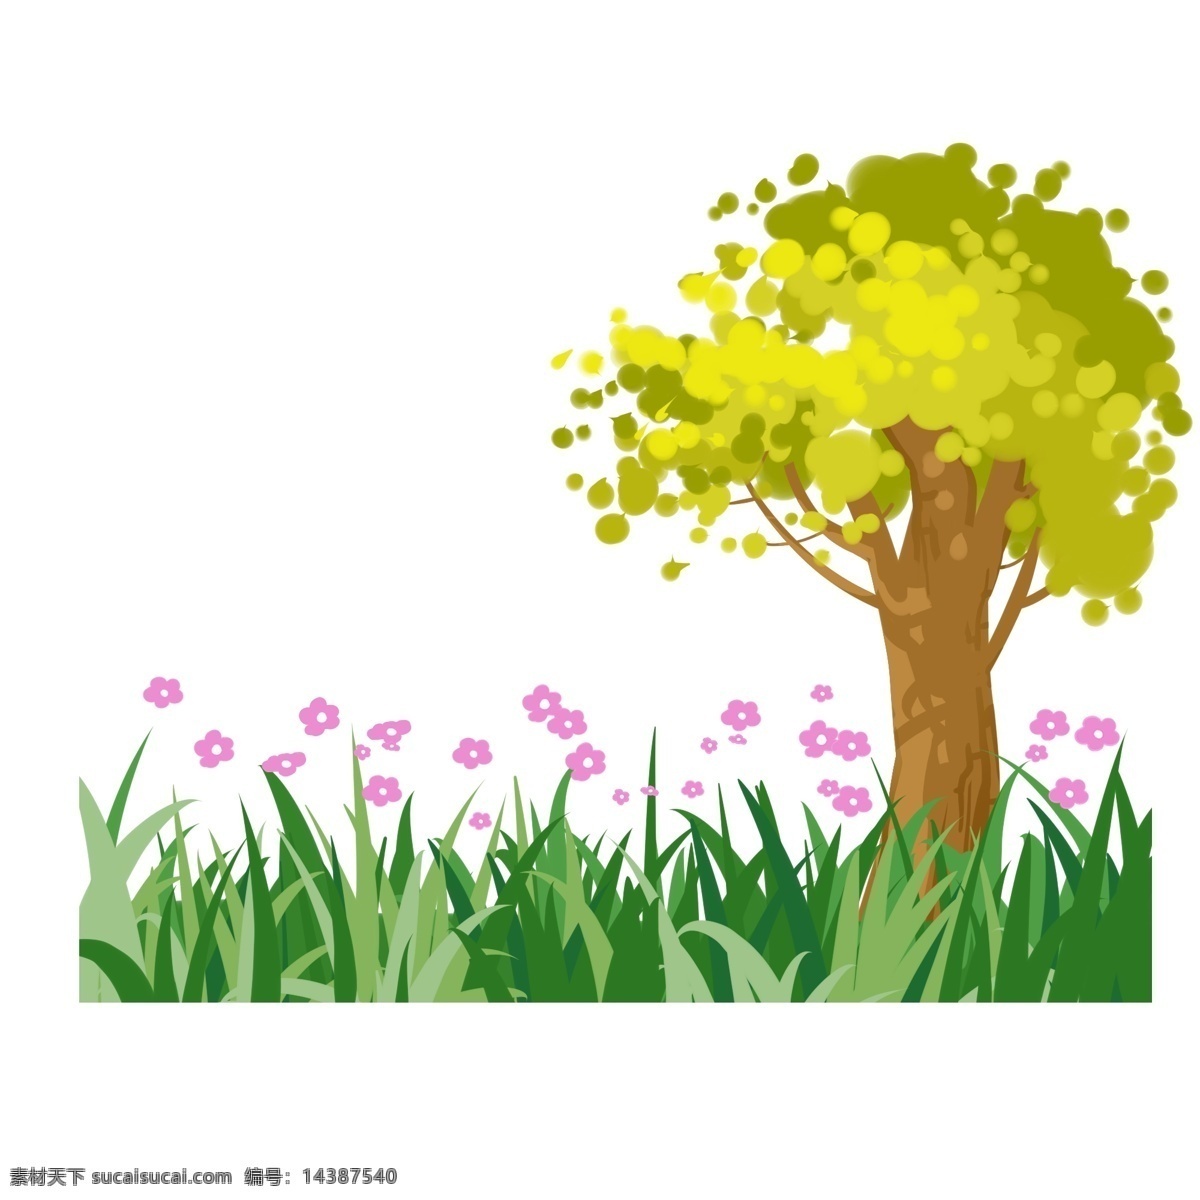 春天 树木 发芽 插画 发芽的树木 卡通插画 美丽的喇叭花 春天插画 春季插画 节气 四季 春天来了